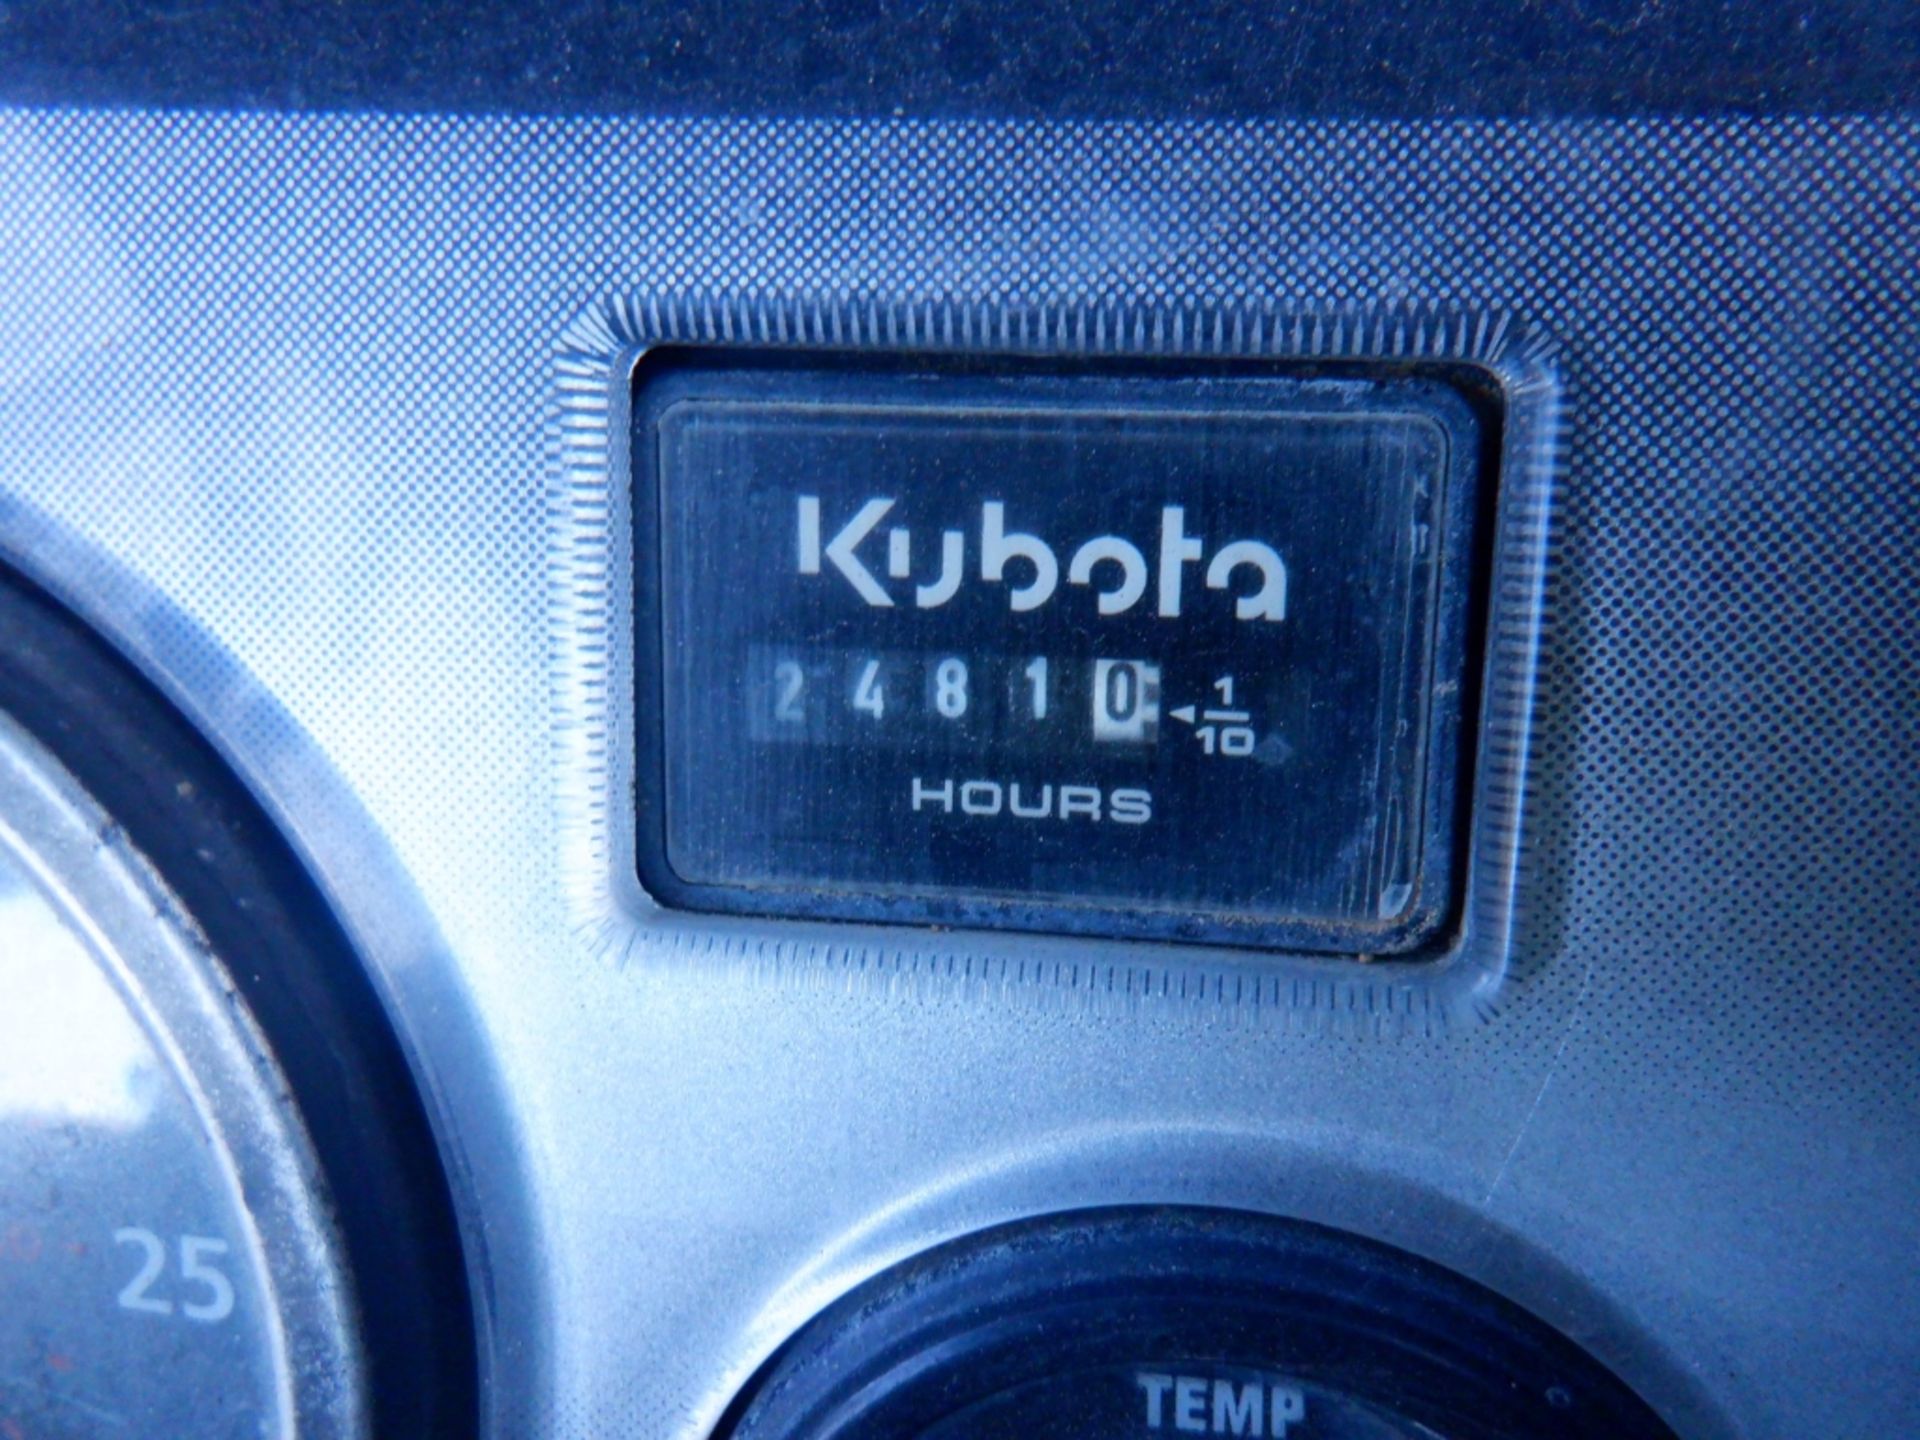 Kubota I-40 RTV Utility Cart, - Image 8 of 8